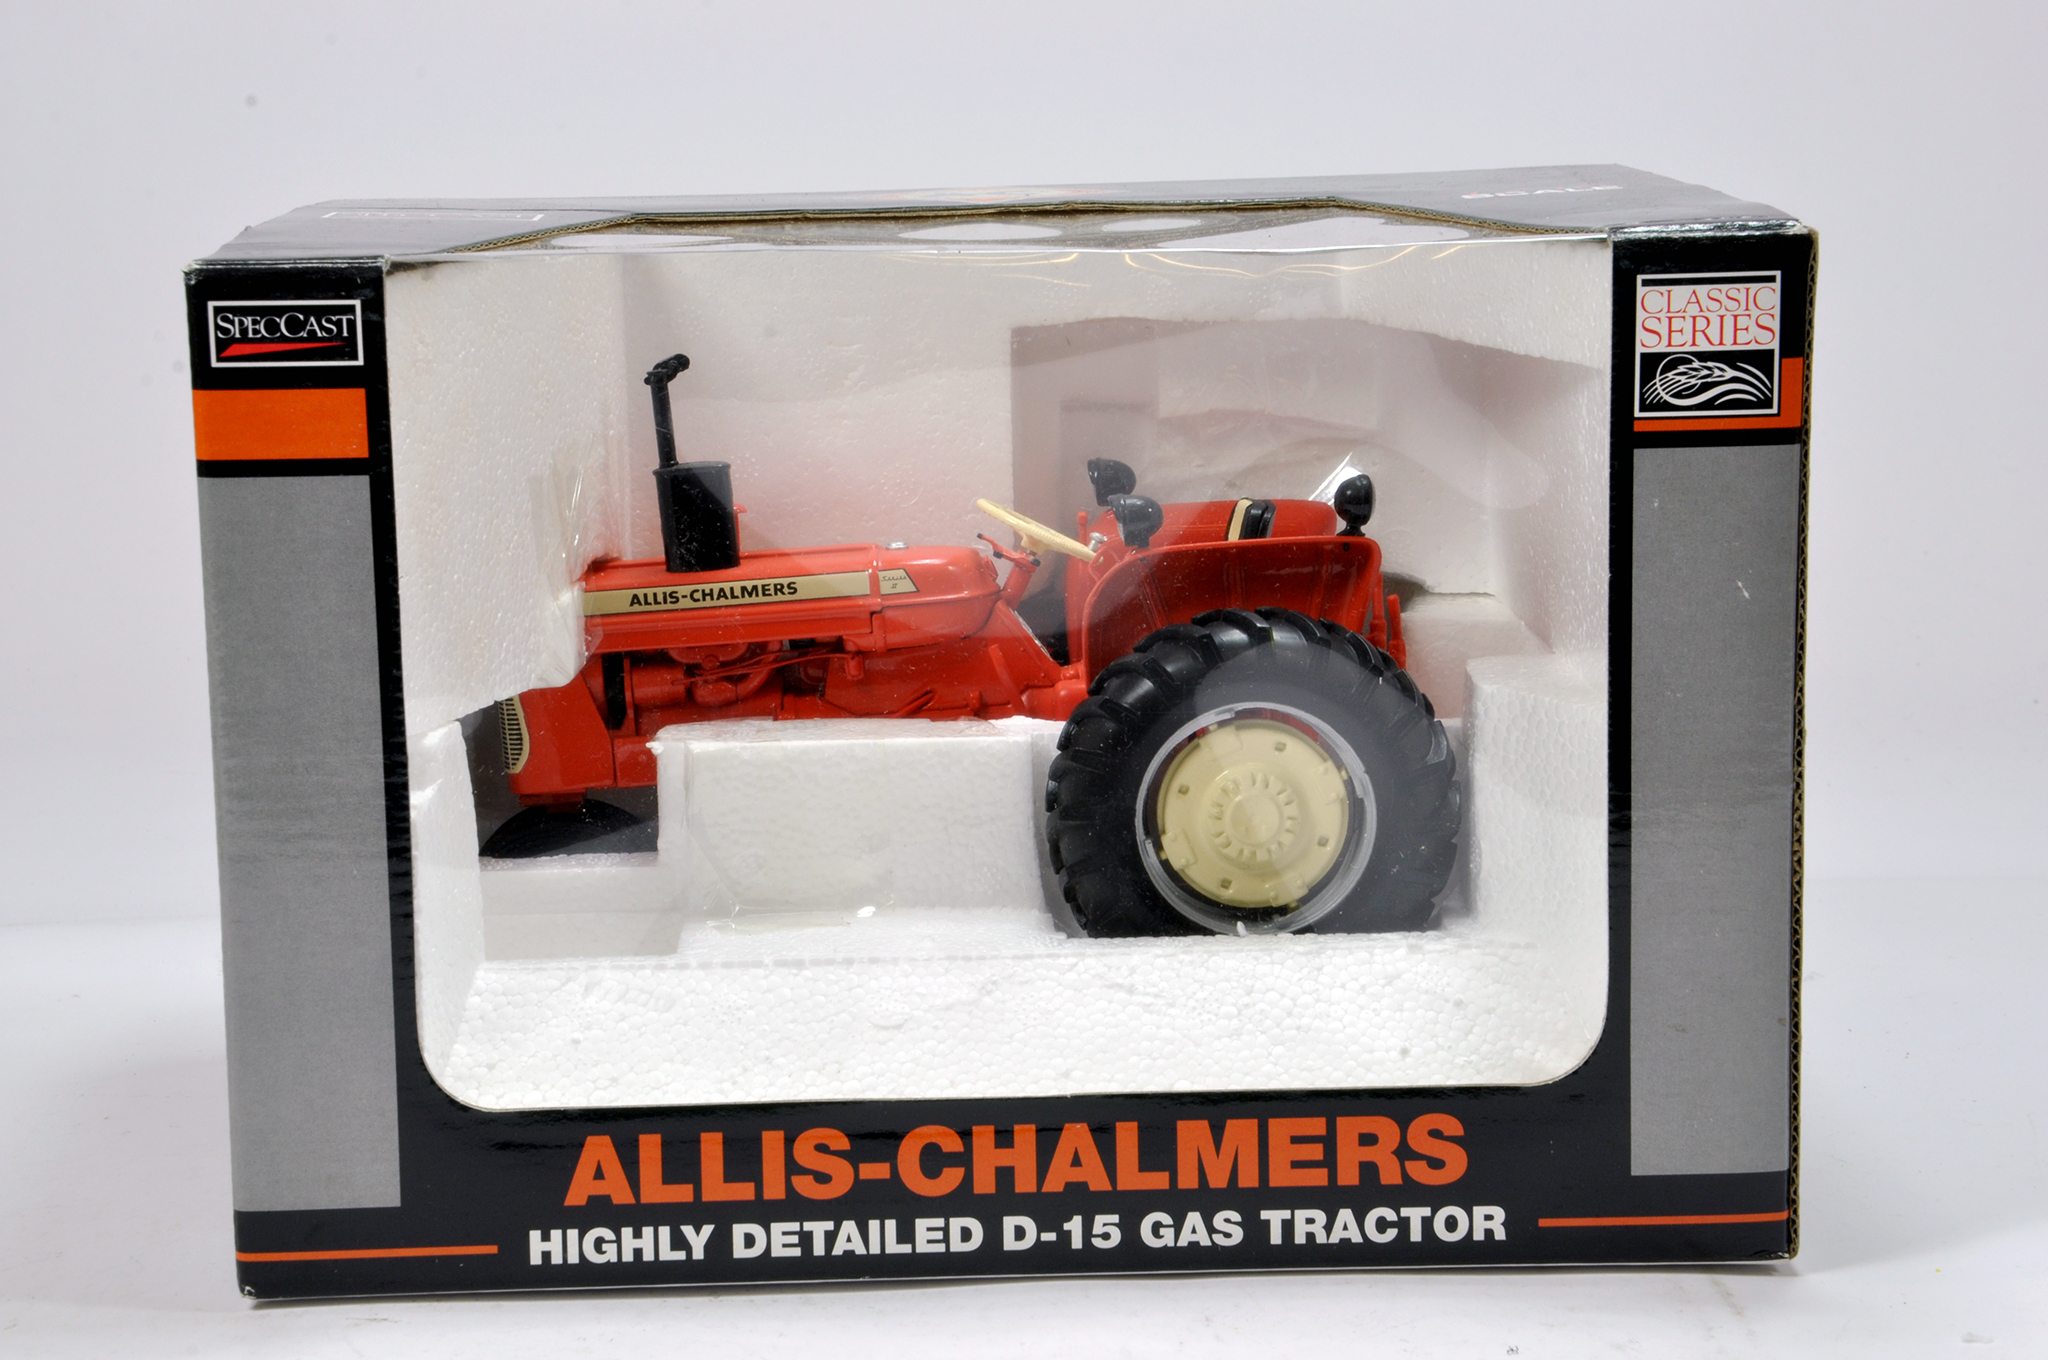 Spec Cast 1/16 Allis Chalmers D-15 Gas Tractor. E in Box.